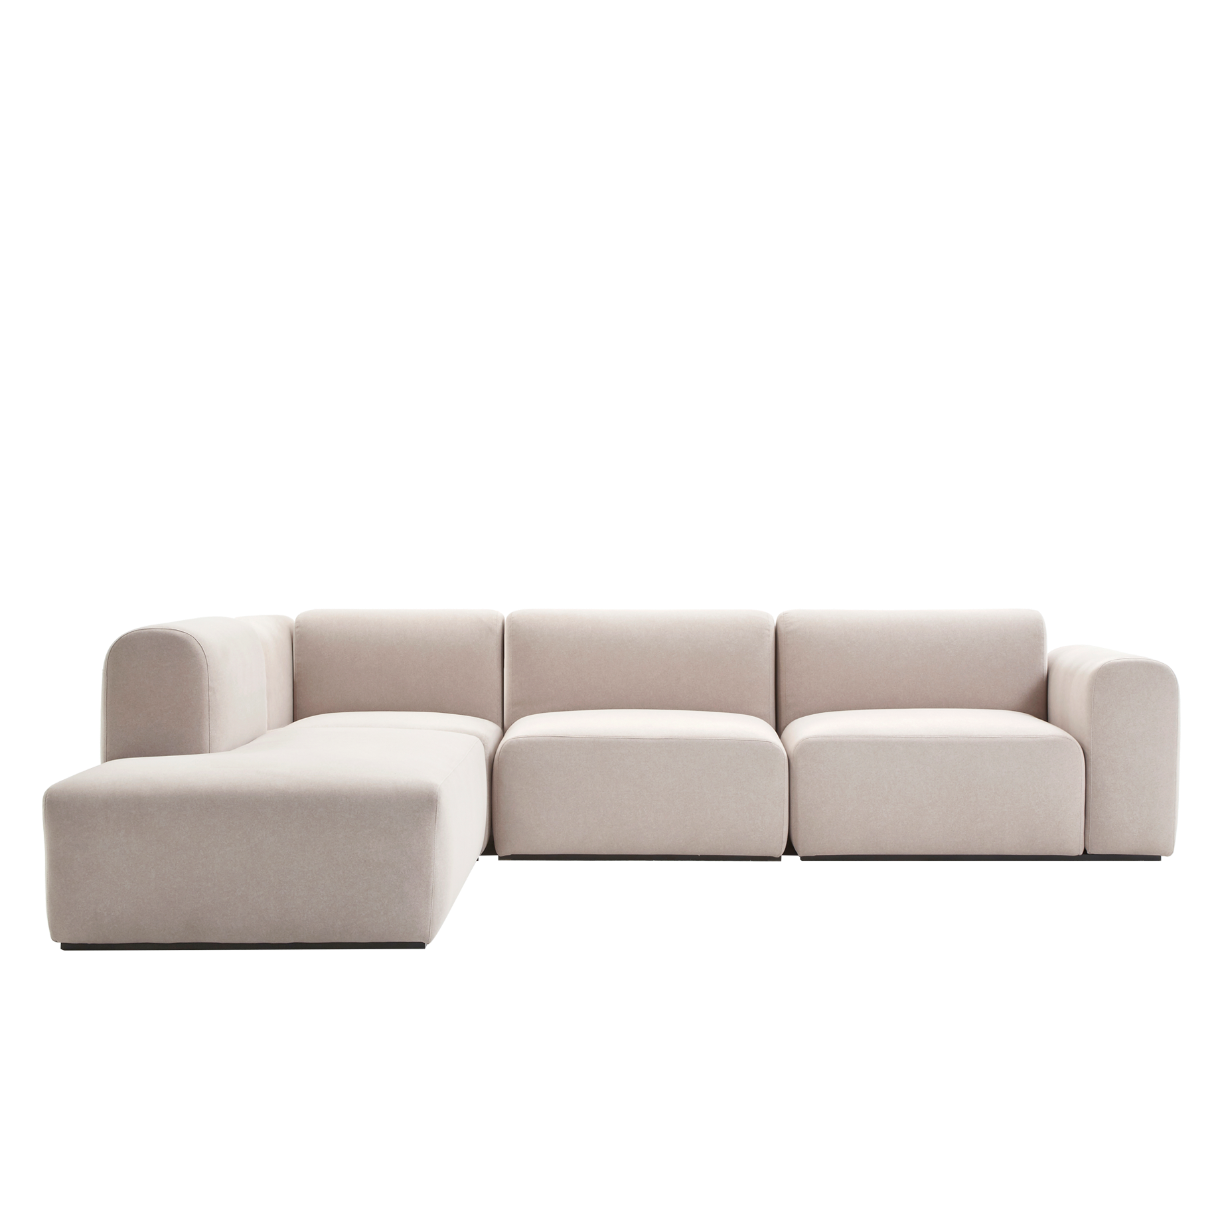 (주)도이치  DOICH ® Aquaclean PEN3 modular couch sofa  도이치 Pen3  4인 카우치 소파 (카우치+코너+1인+1.5인) ) (스페인 아쿠아클린)  [3주 주문제작]